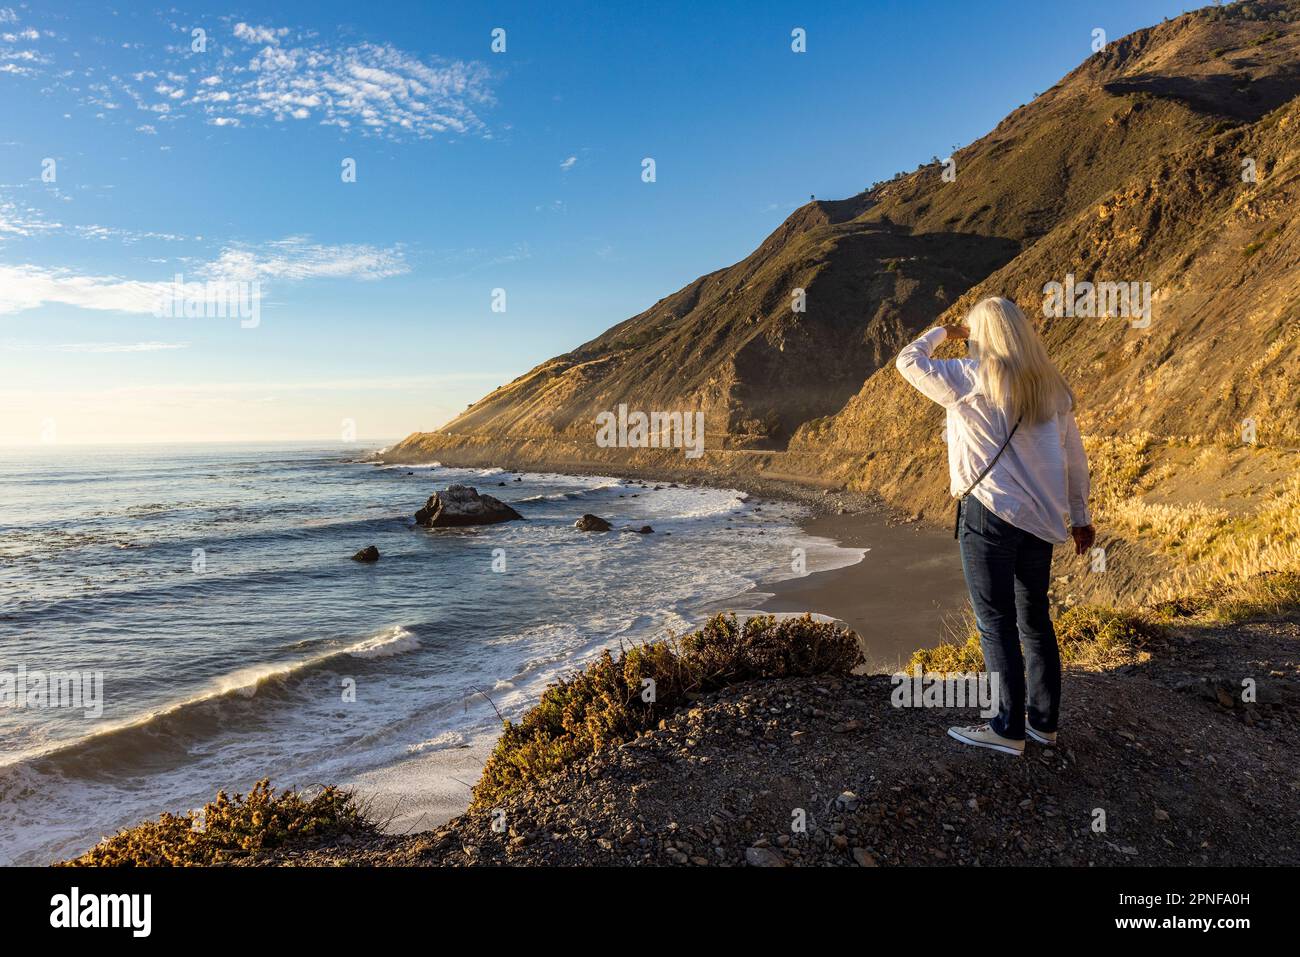 États-Unis, Californie, Big sur, femme blonde senior regardant l'océan Pacifique Banque D'Images